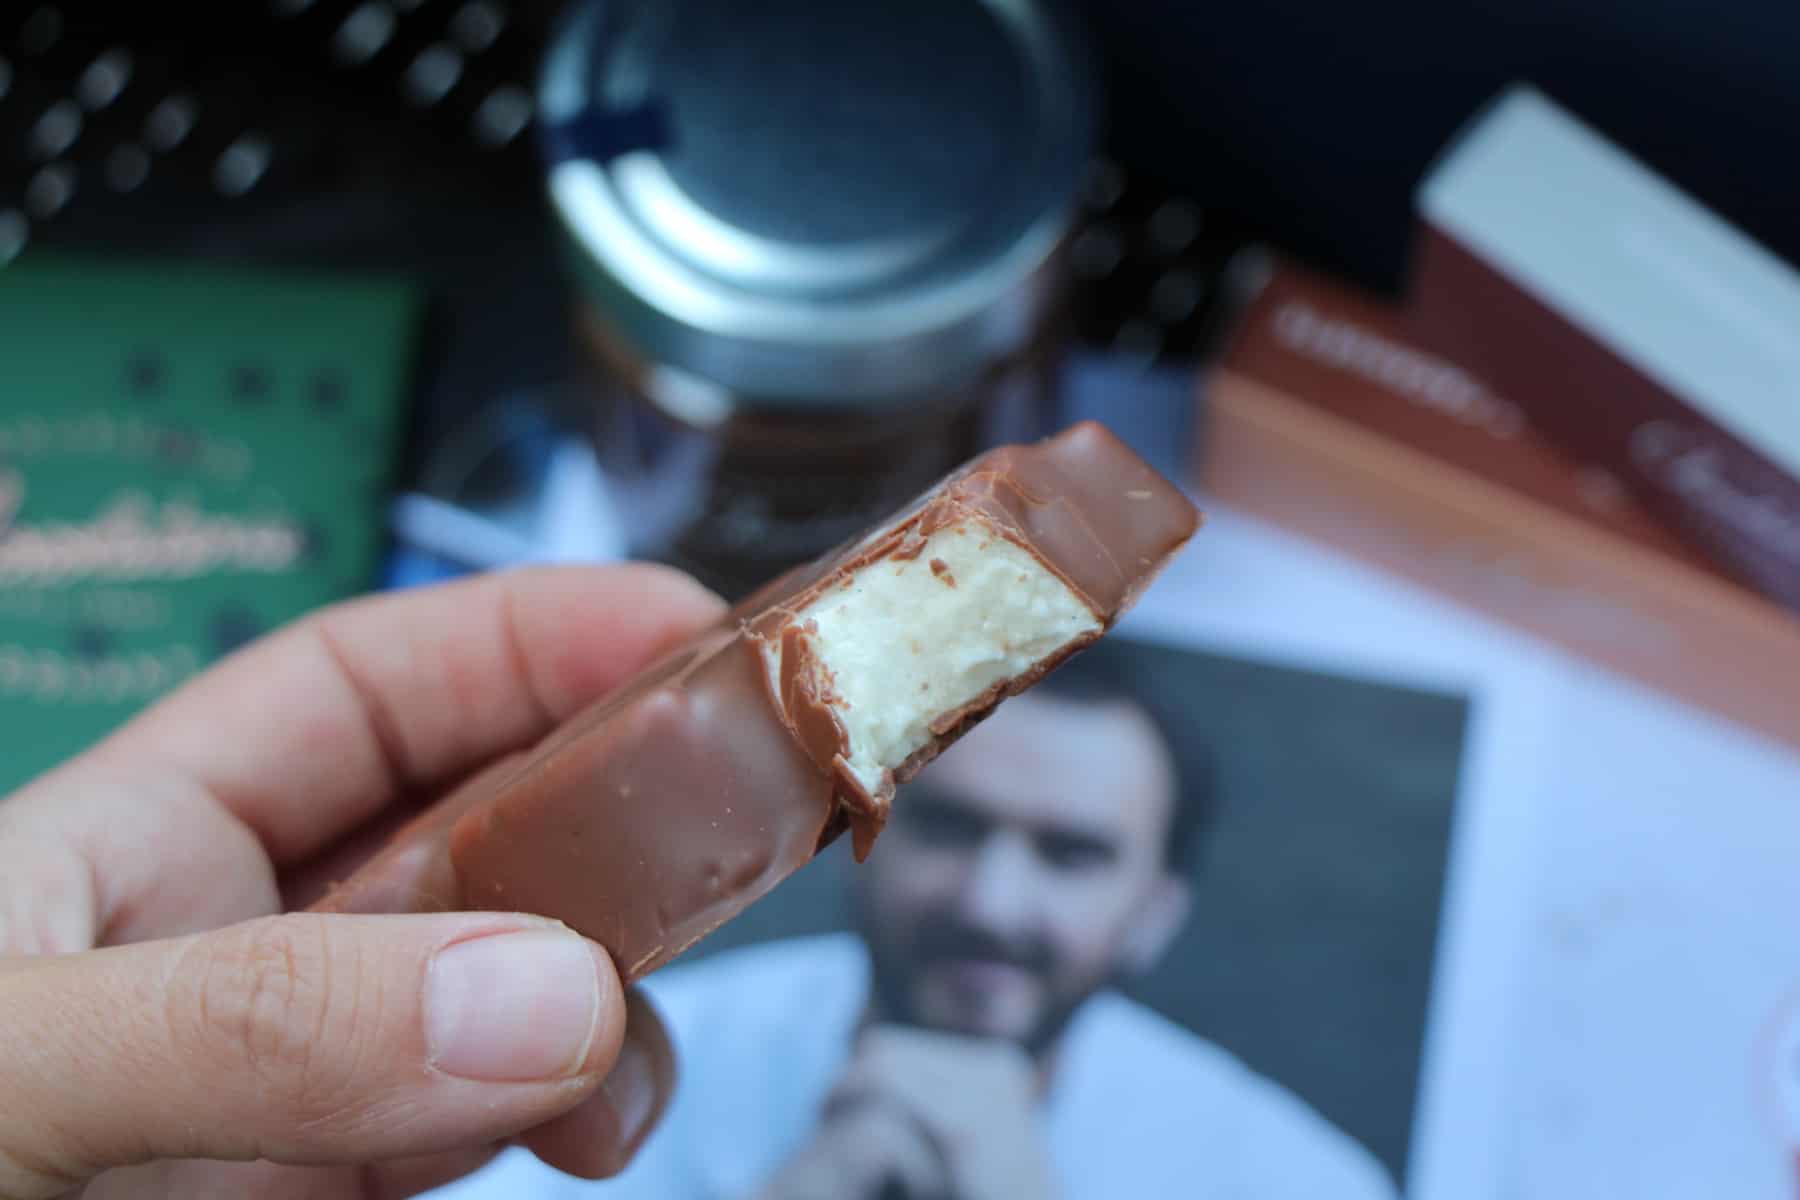 Oursons Guimauve Lait La Chocolaterie Cyril Lignac - Gourmand Croquant